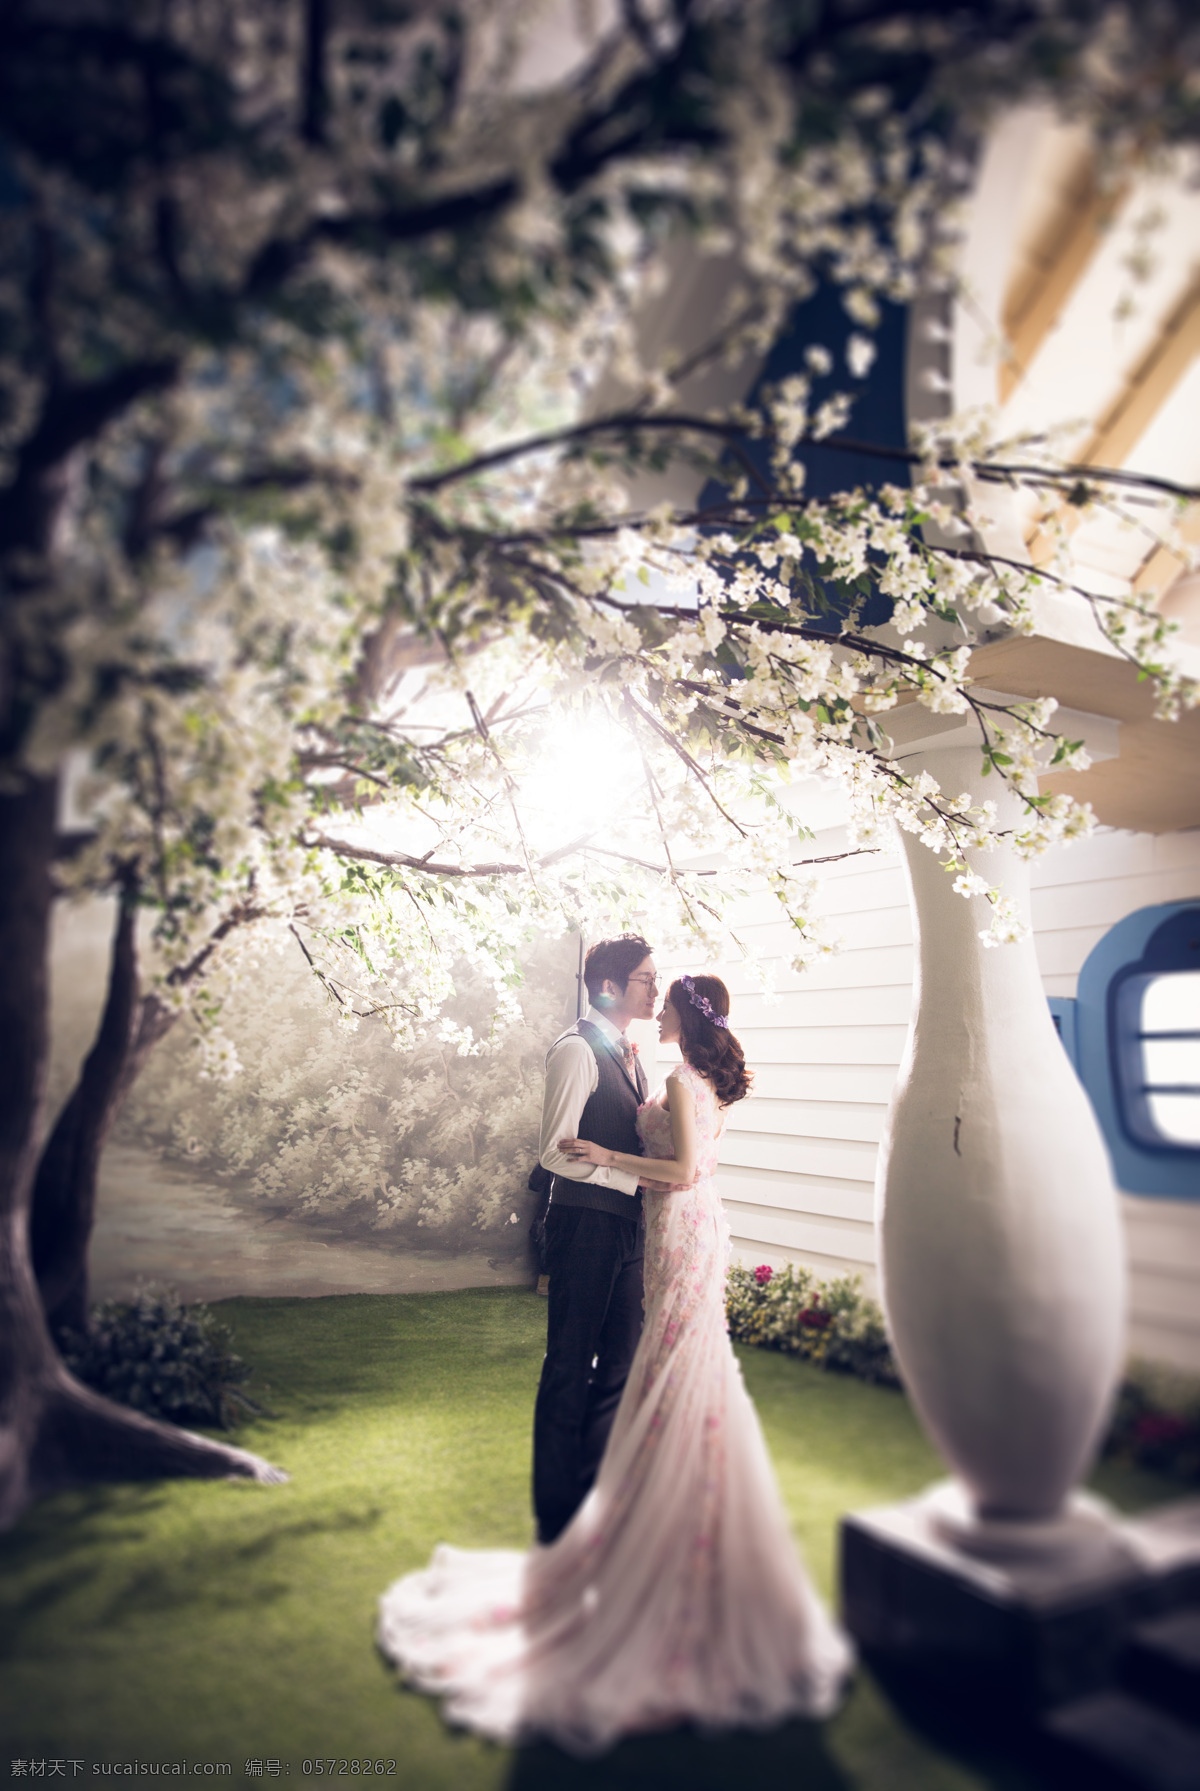 韩式 欧式 中式 婚纱照 婚纱摄影 地中海 樱花 人物图库 人物摄影